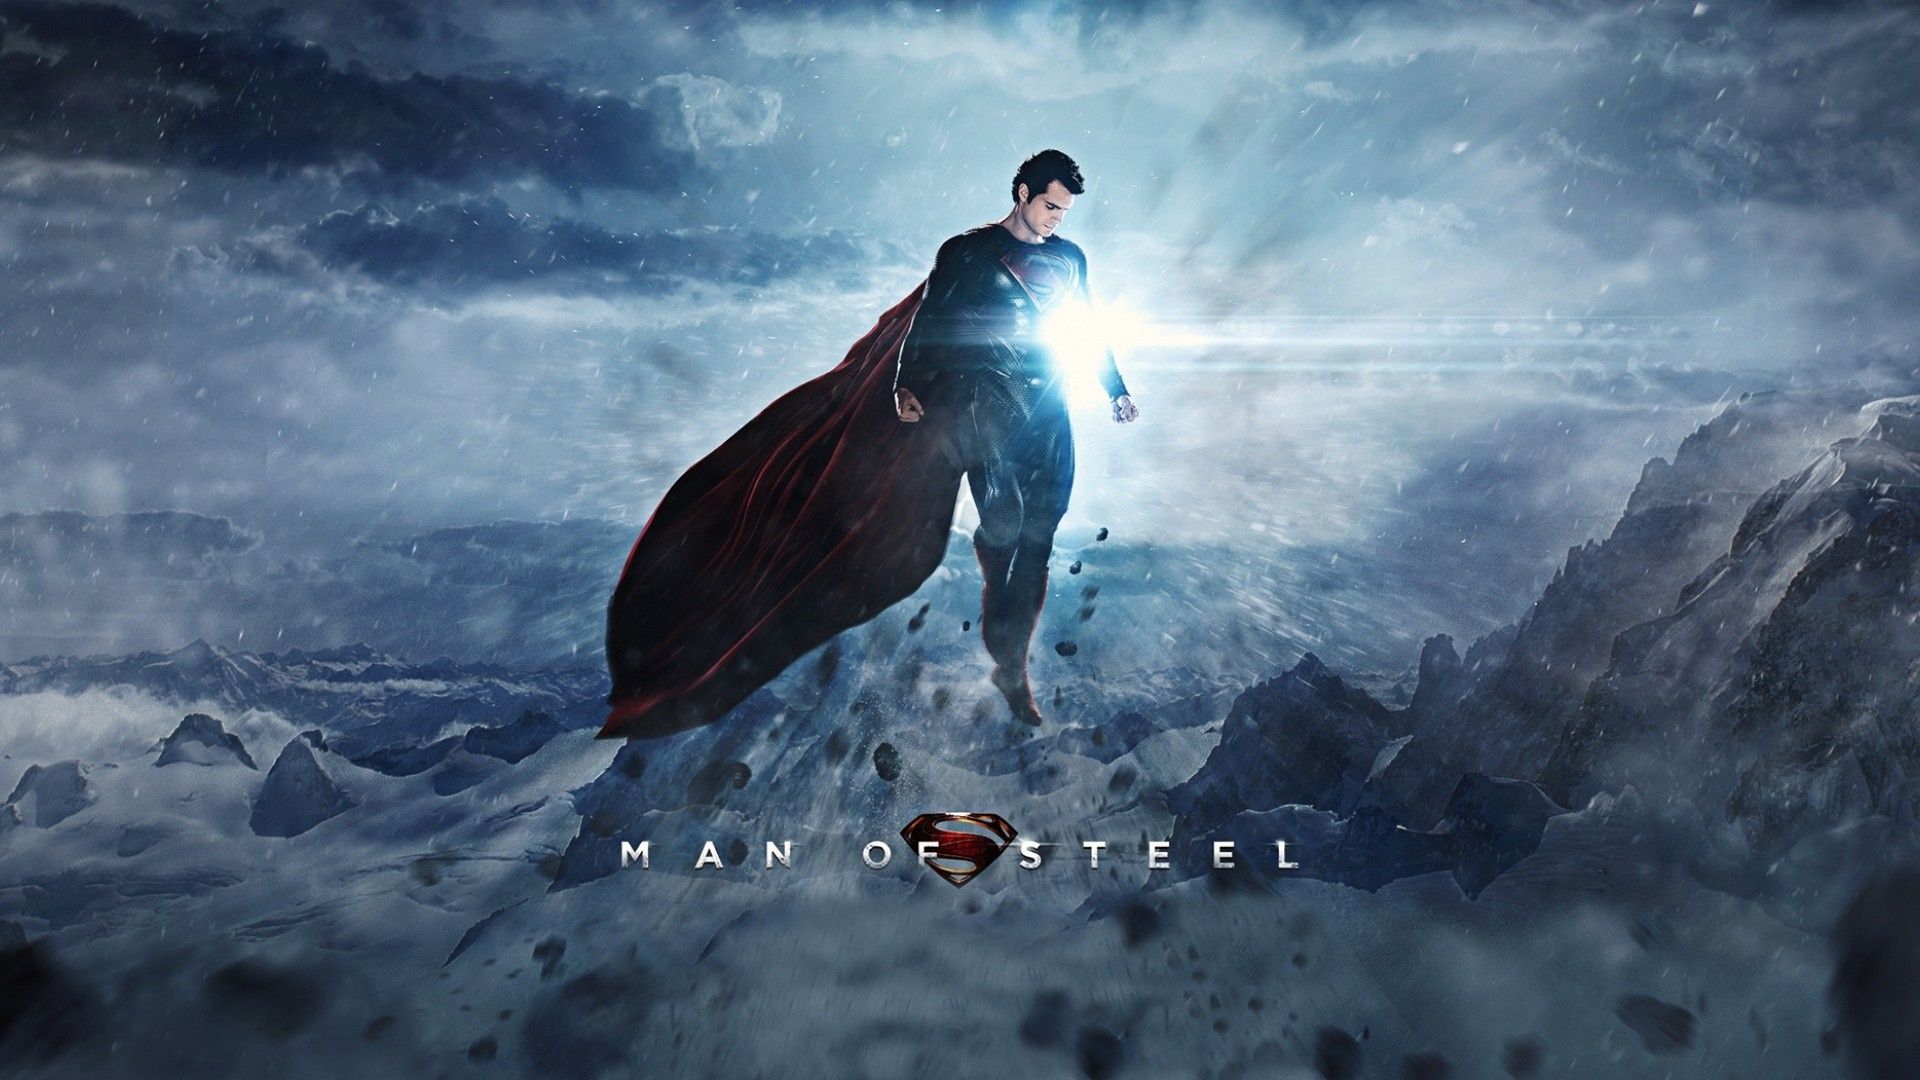 Man of Steel Superman Light Henry Cavill wallpaperx1080